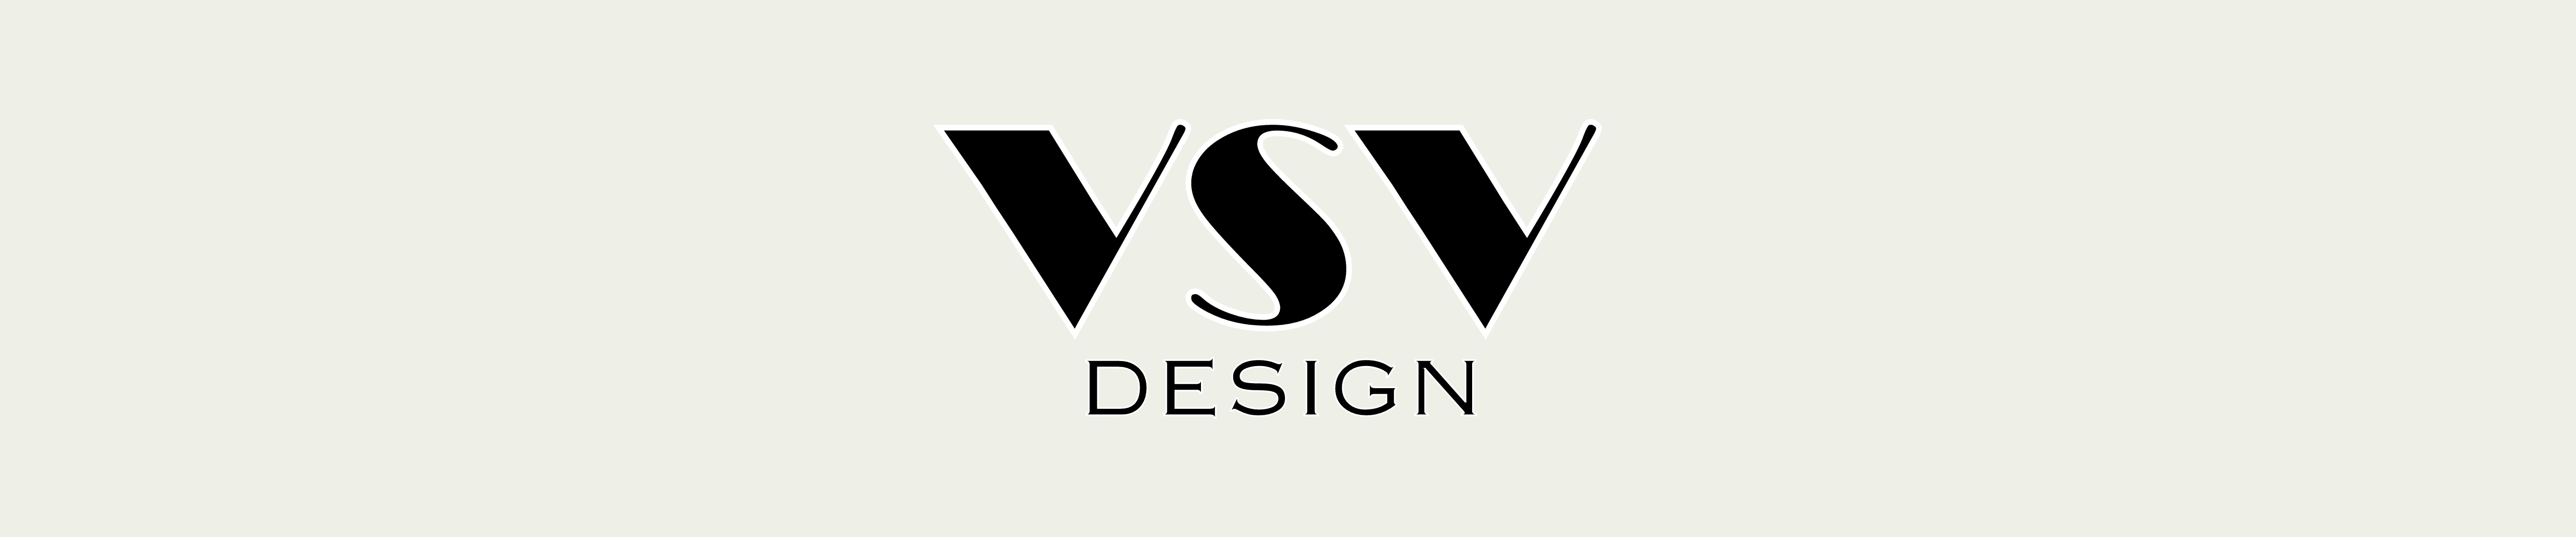 VSV Design